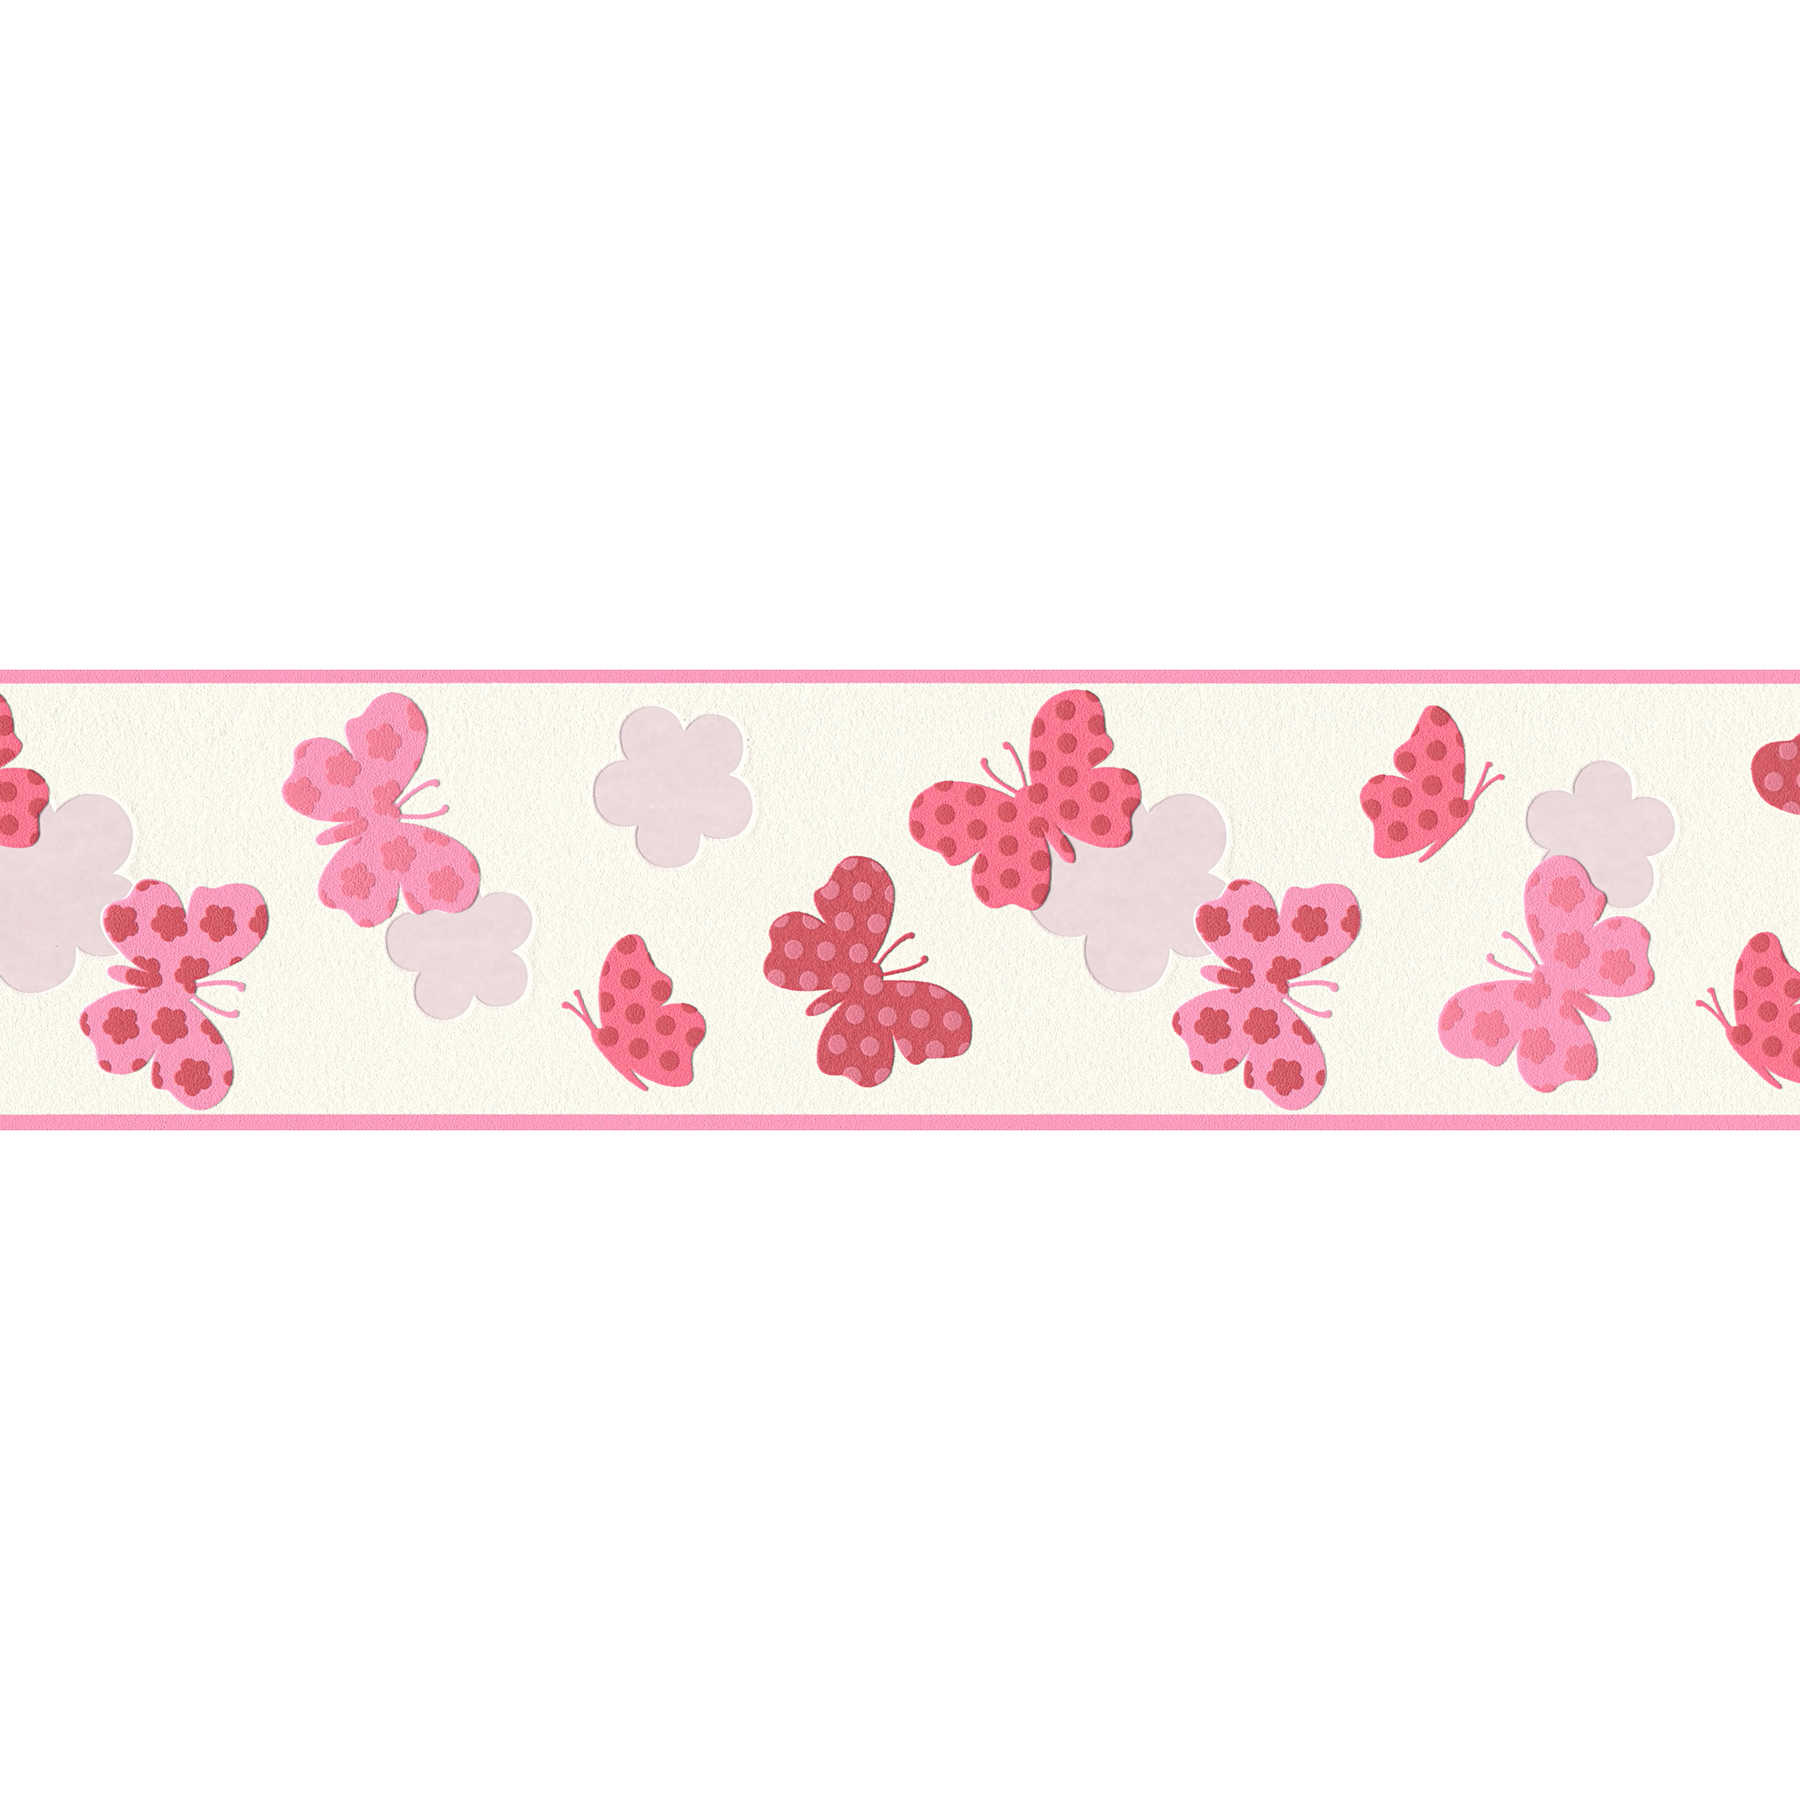 Wallpaper border butterfly for girls - pink, white
